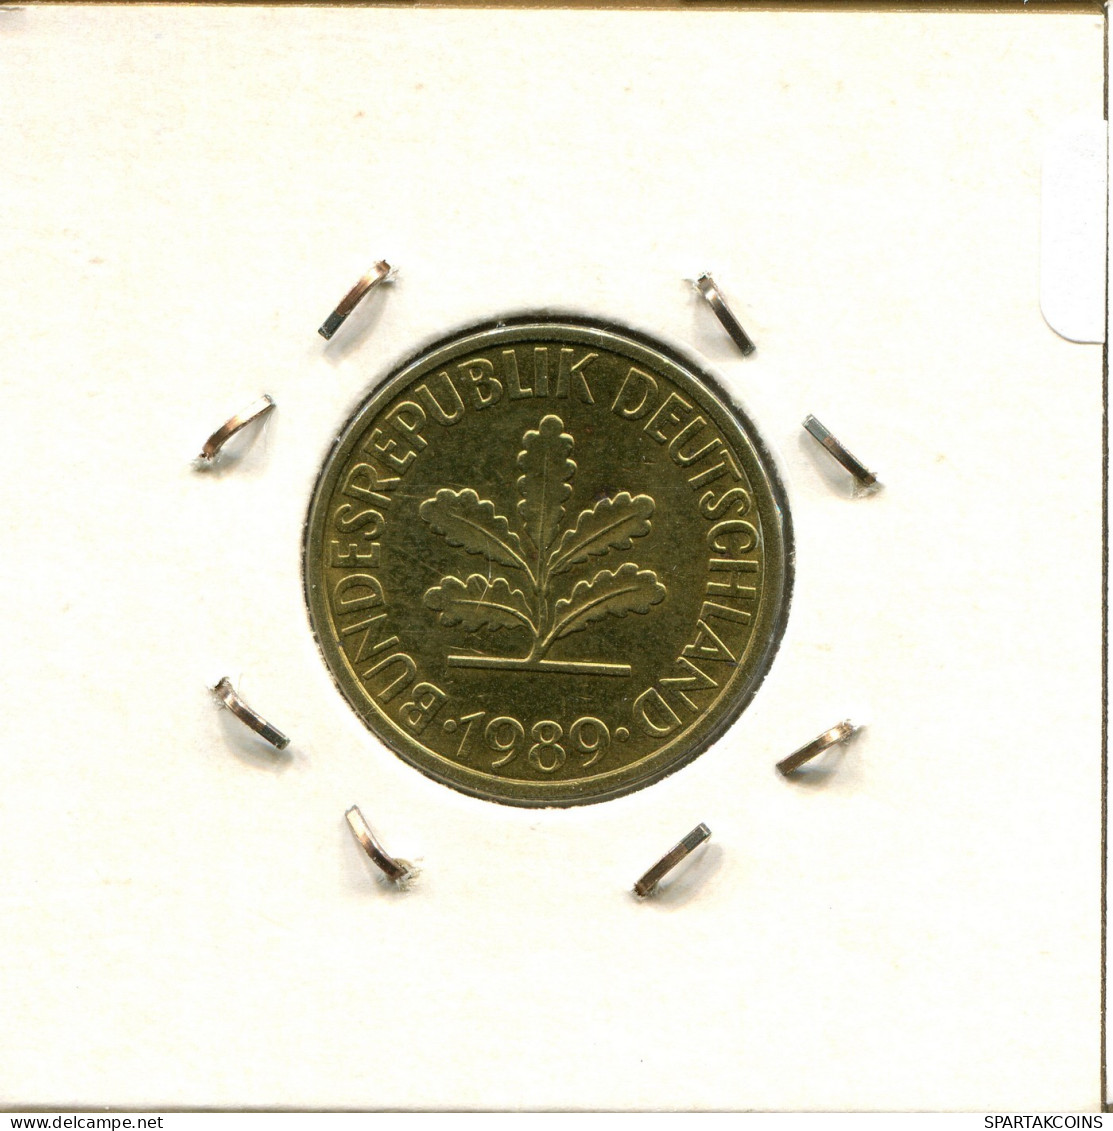 10 PFENNIG 1989 J BRD ALEMANIA Moneda GERMANY #DB470.E.A - 10 Pfennig